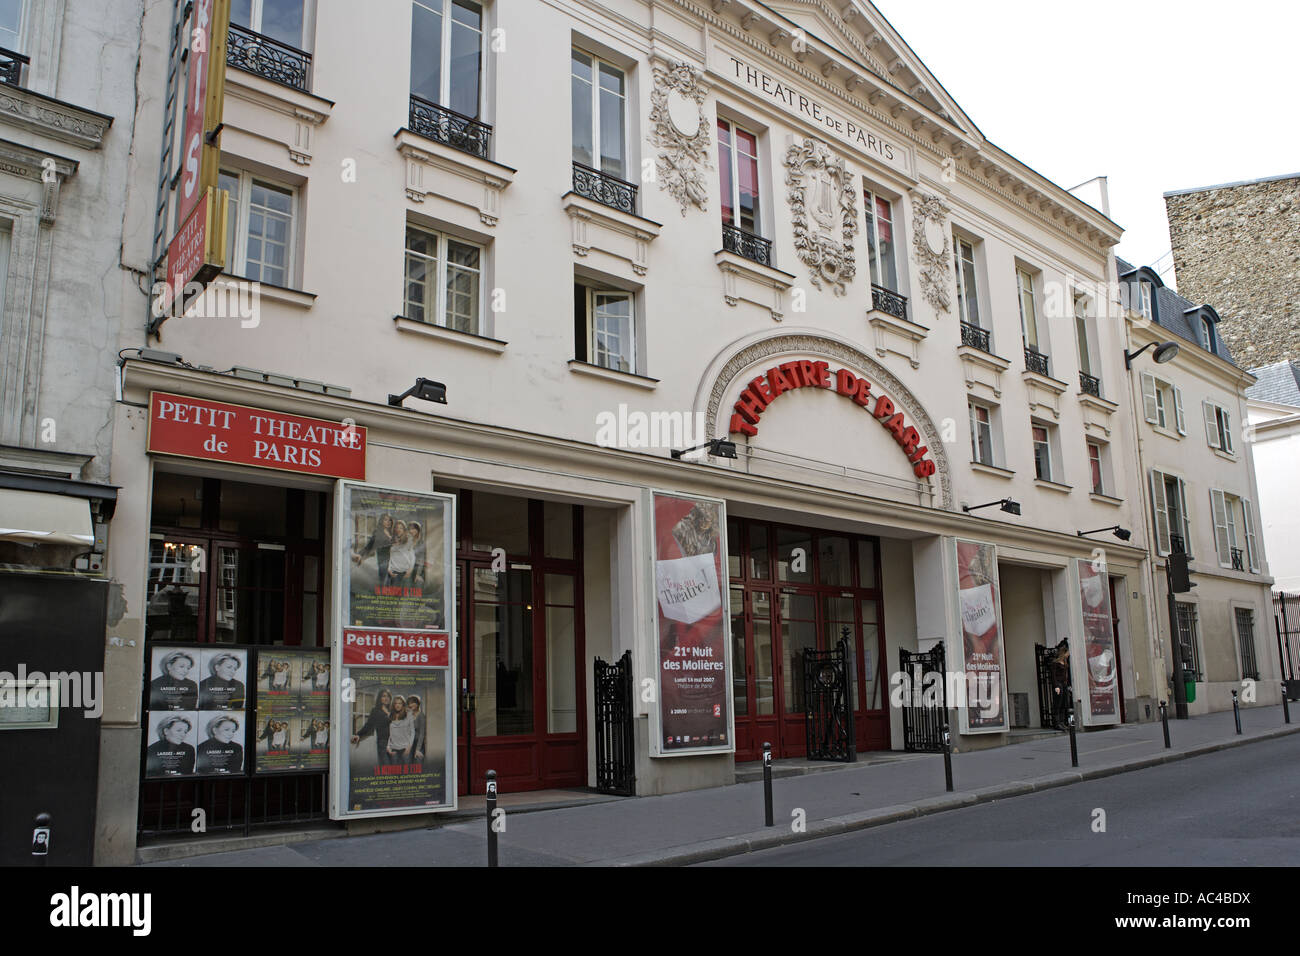 Theatre de Paris, rue Blanche, Paris Stock Photo